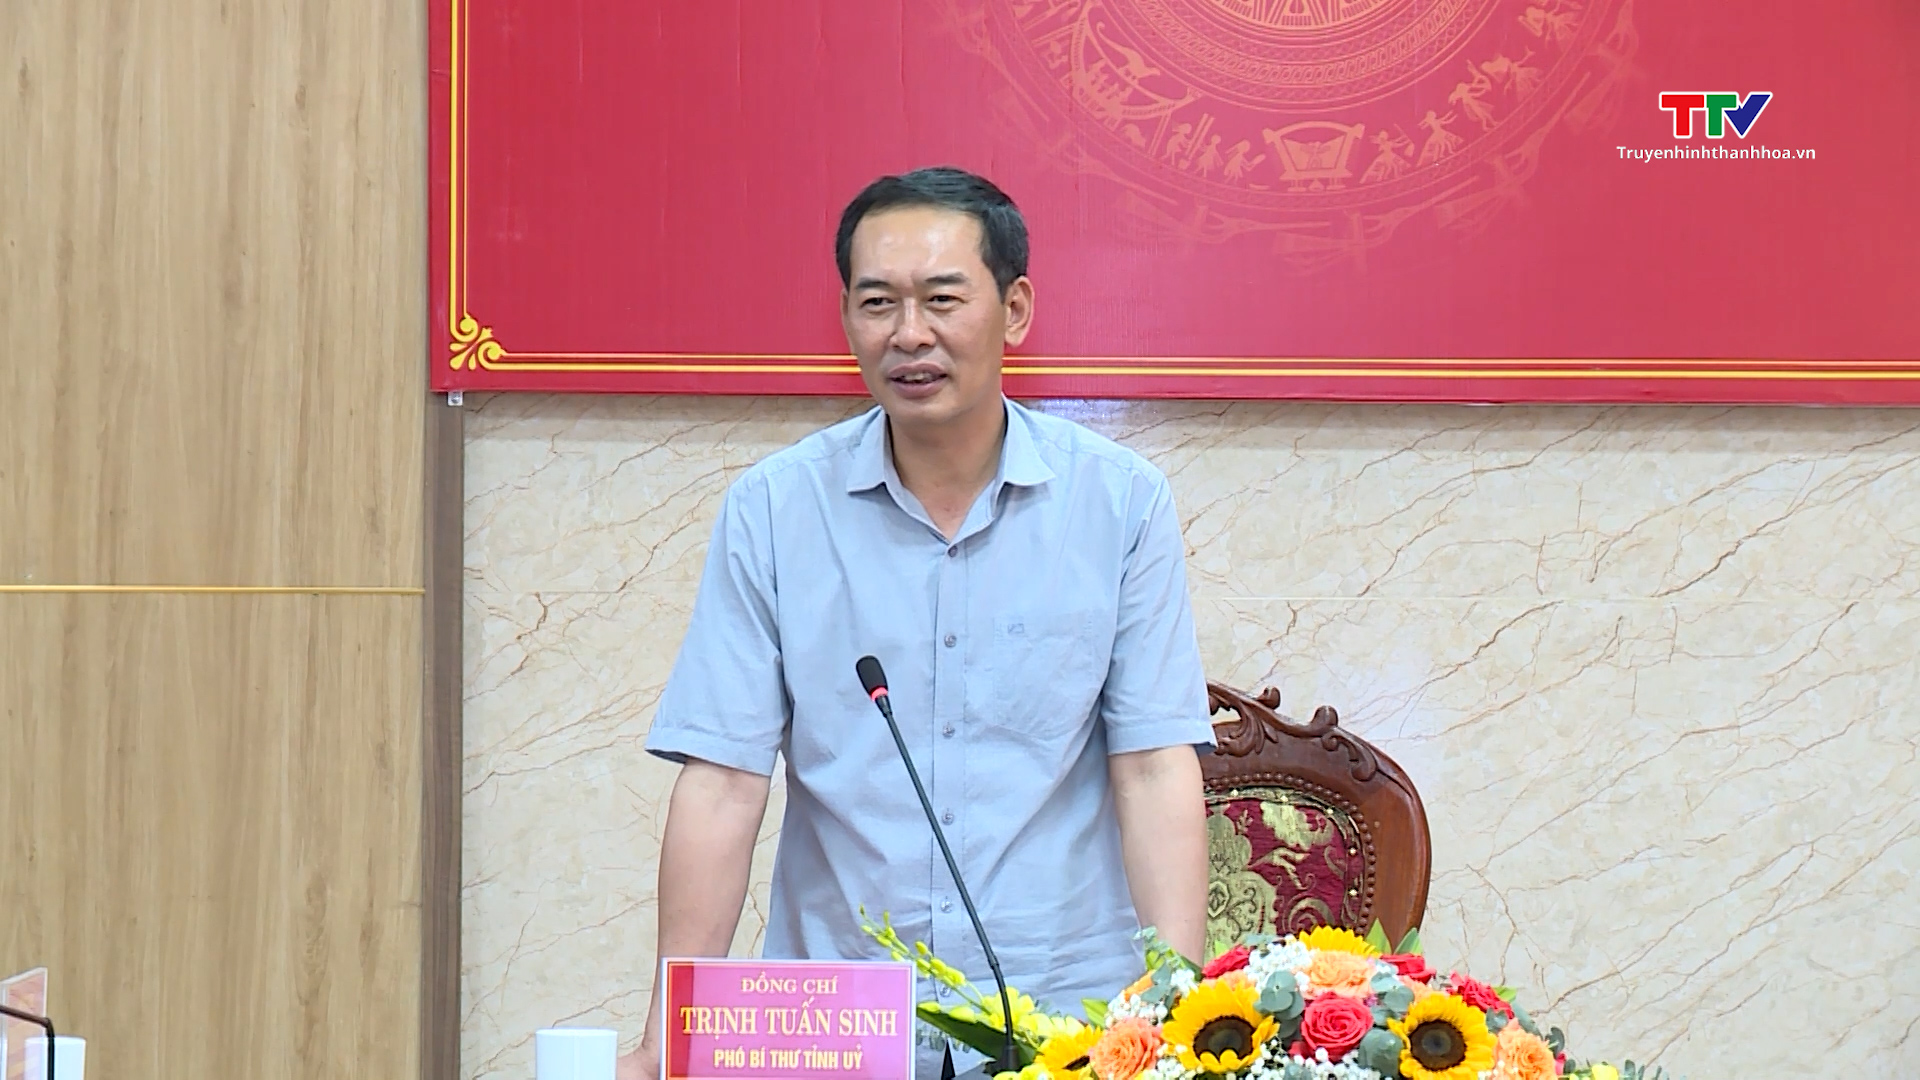 Phó Bí thư Tỉnh ủy Trịnh Tuấn Sinh làm việc tại Hậu Lộc- Ảnh 3.